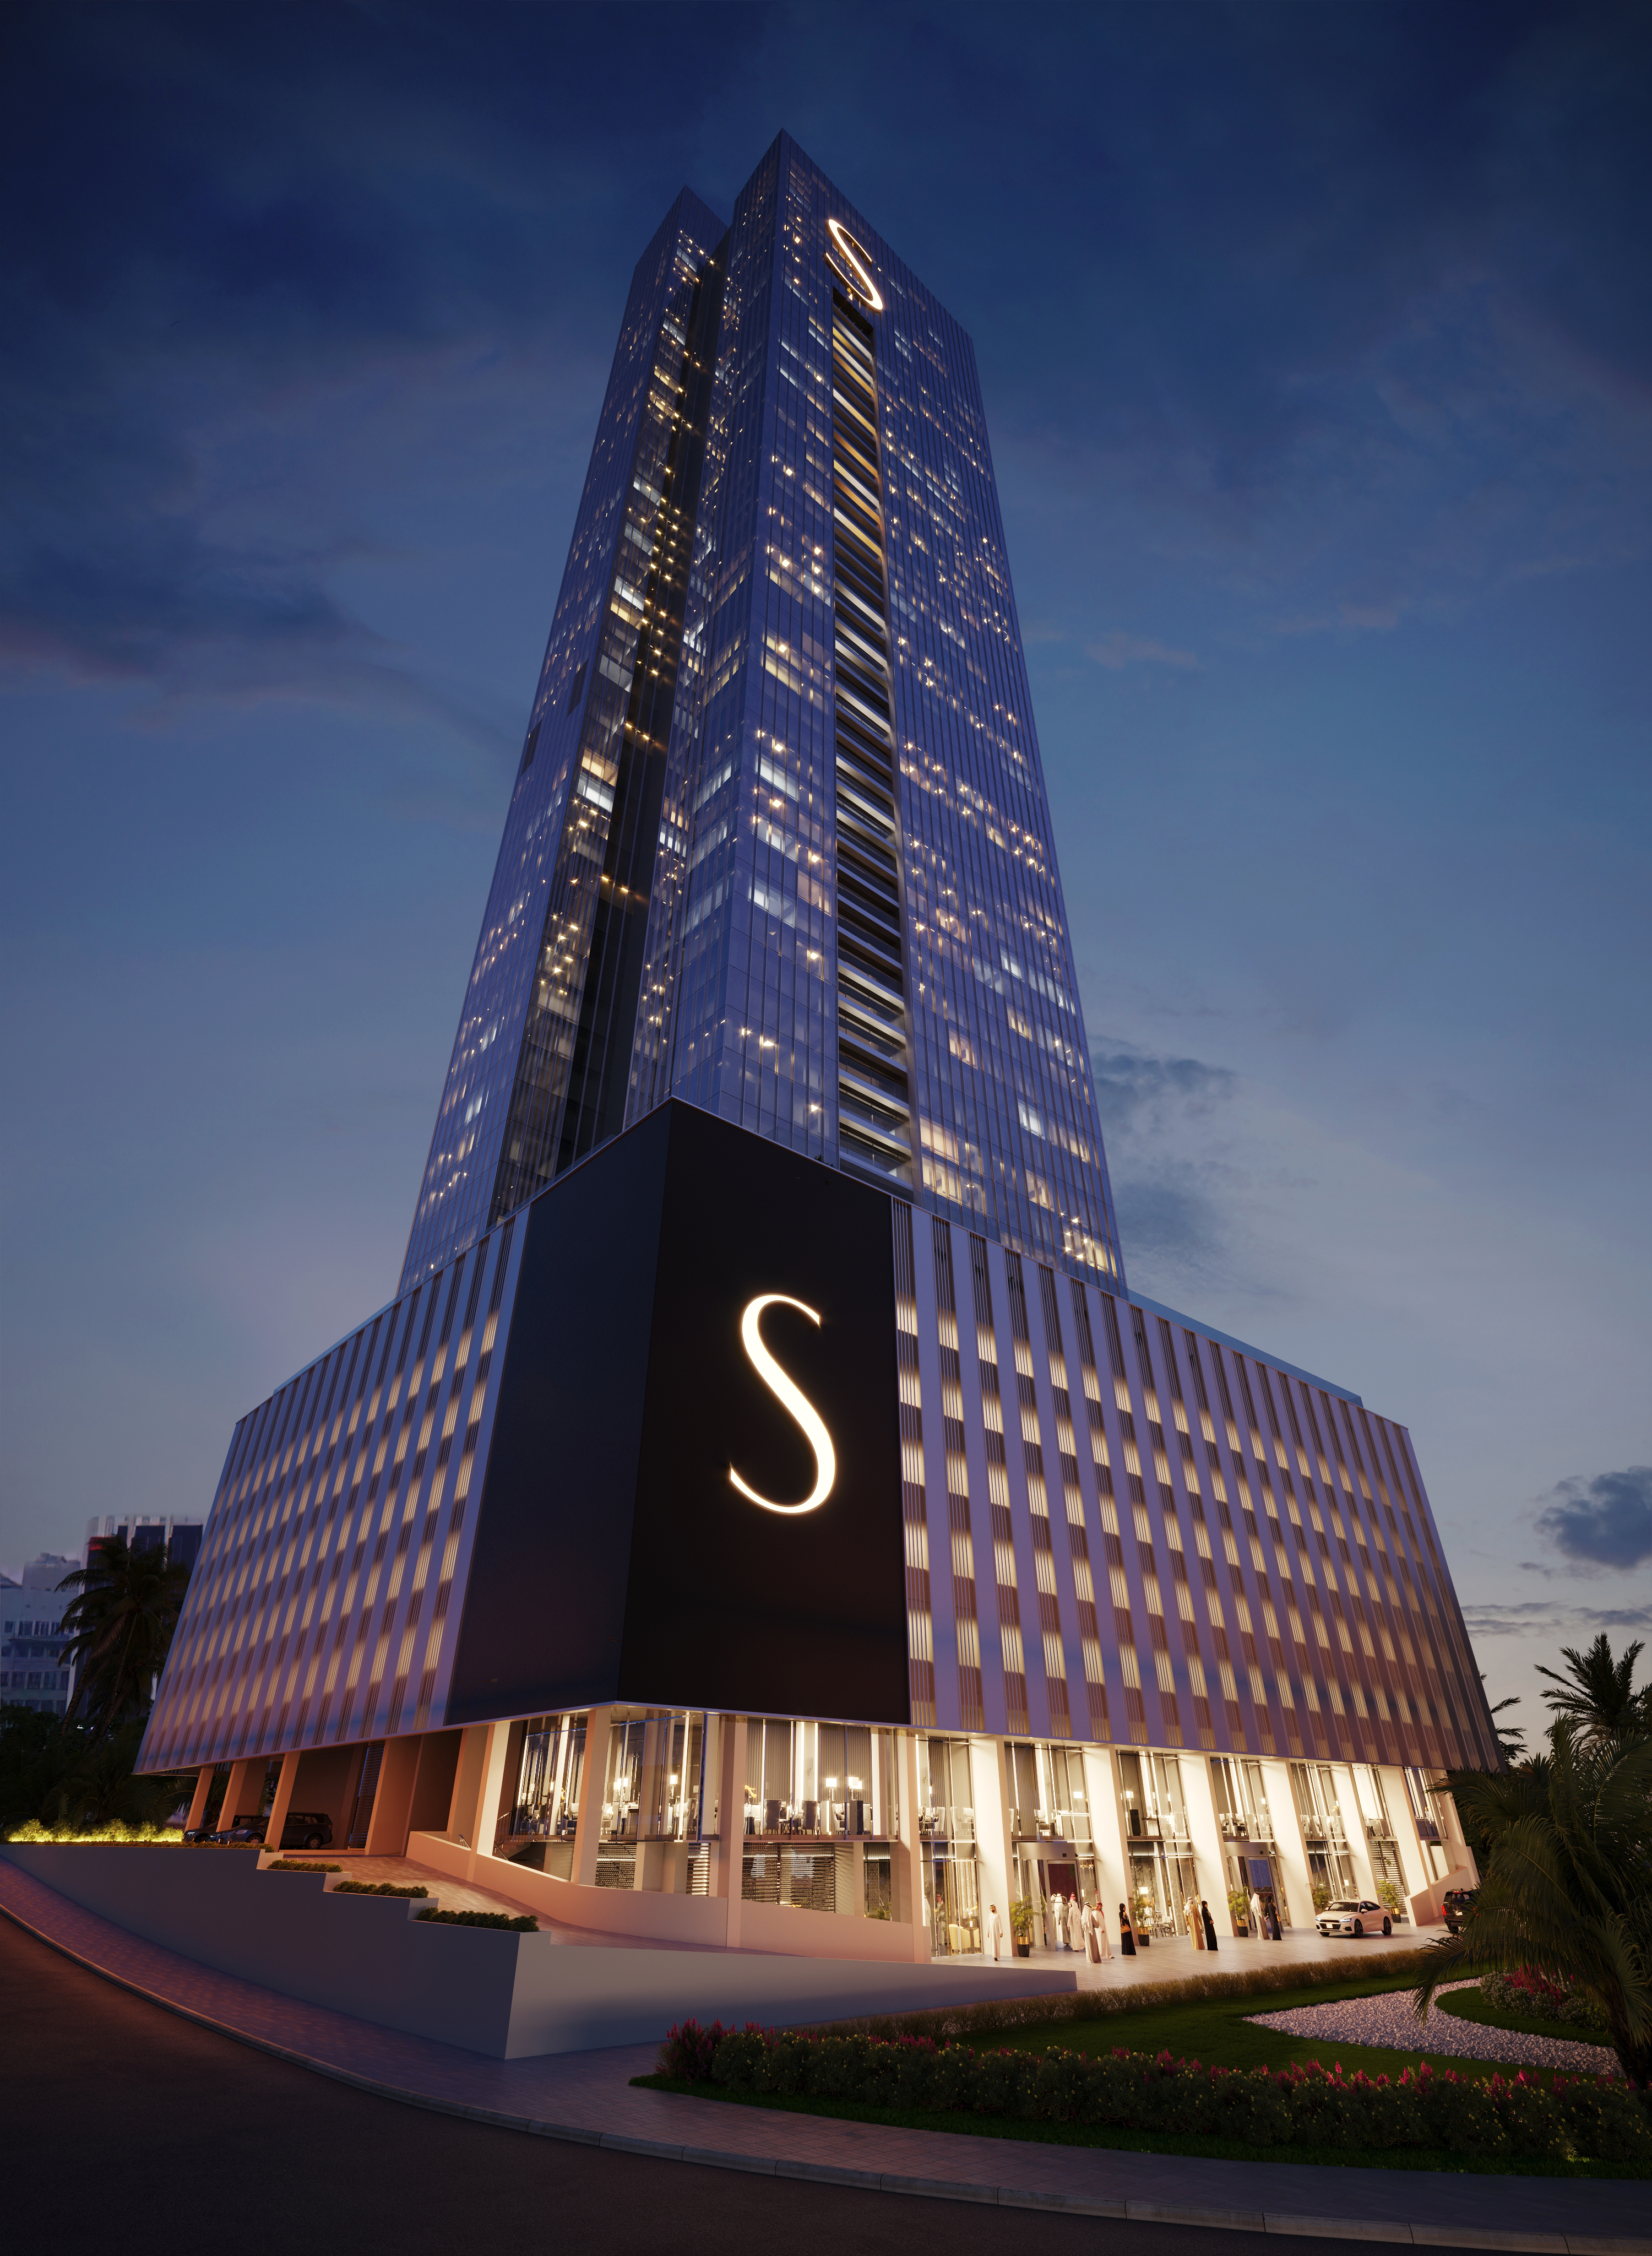 Sobha The S Tower in Al Safouh, Dubai